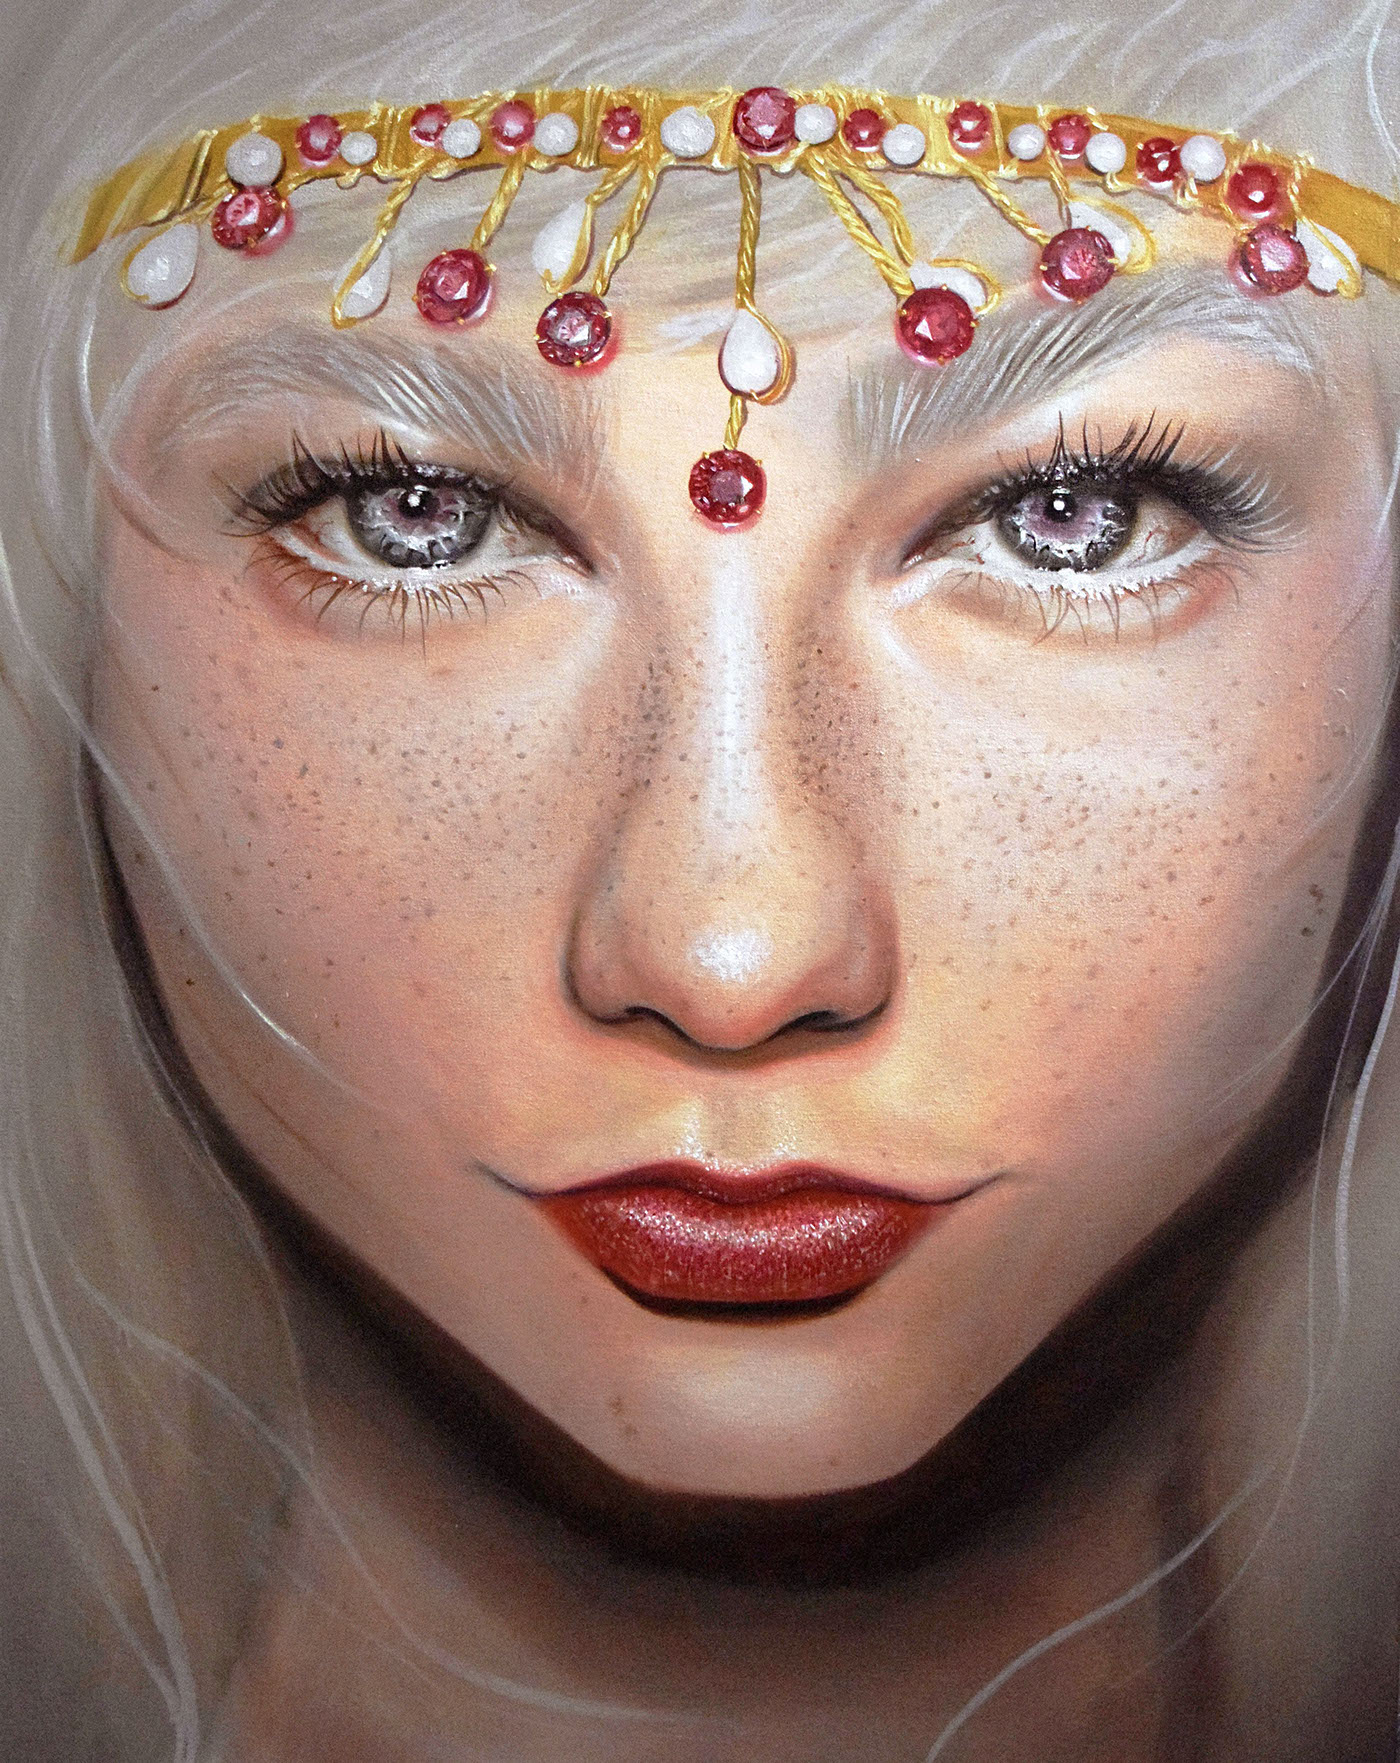 oiloncanvas portrait Flowers pearls feminine Realism large scale